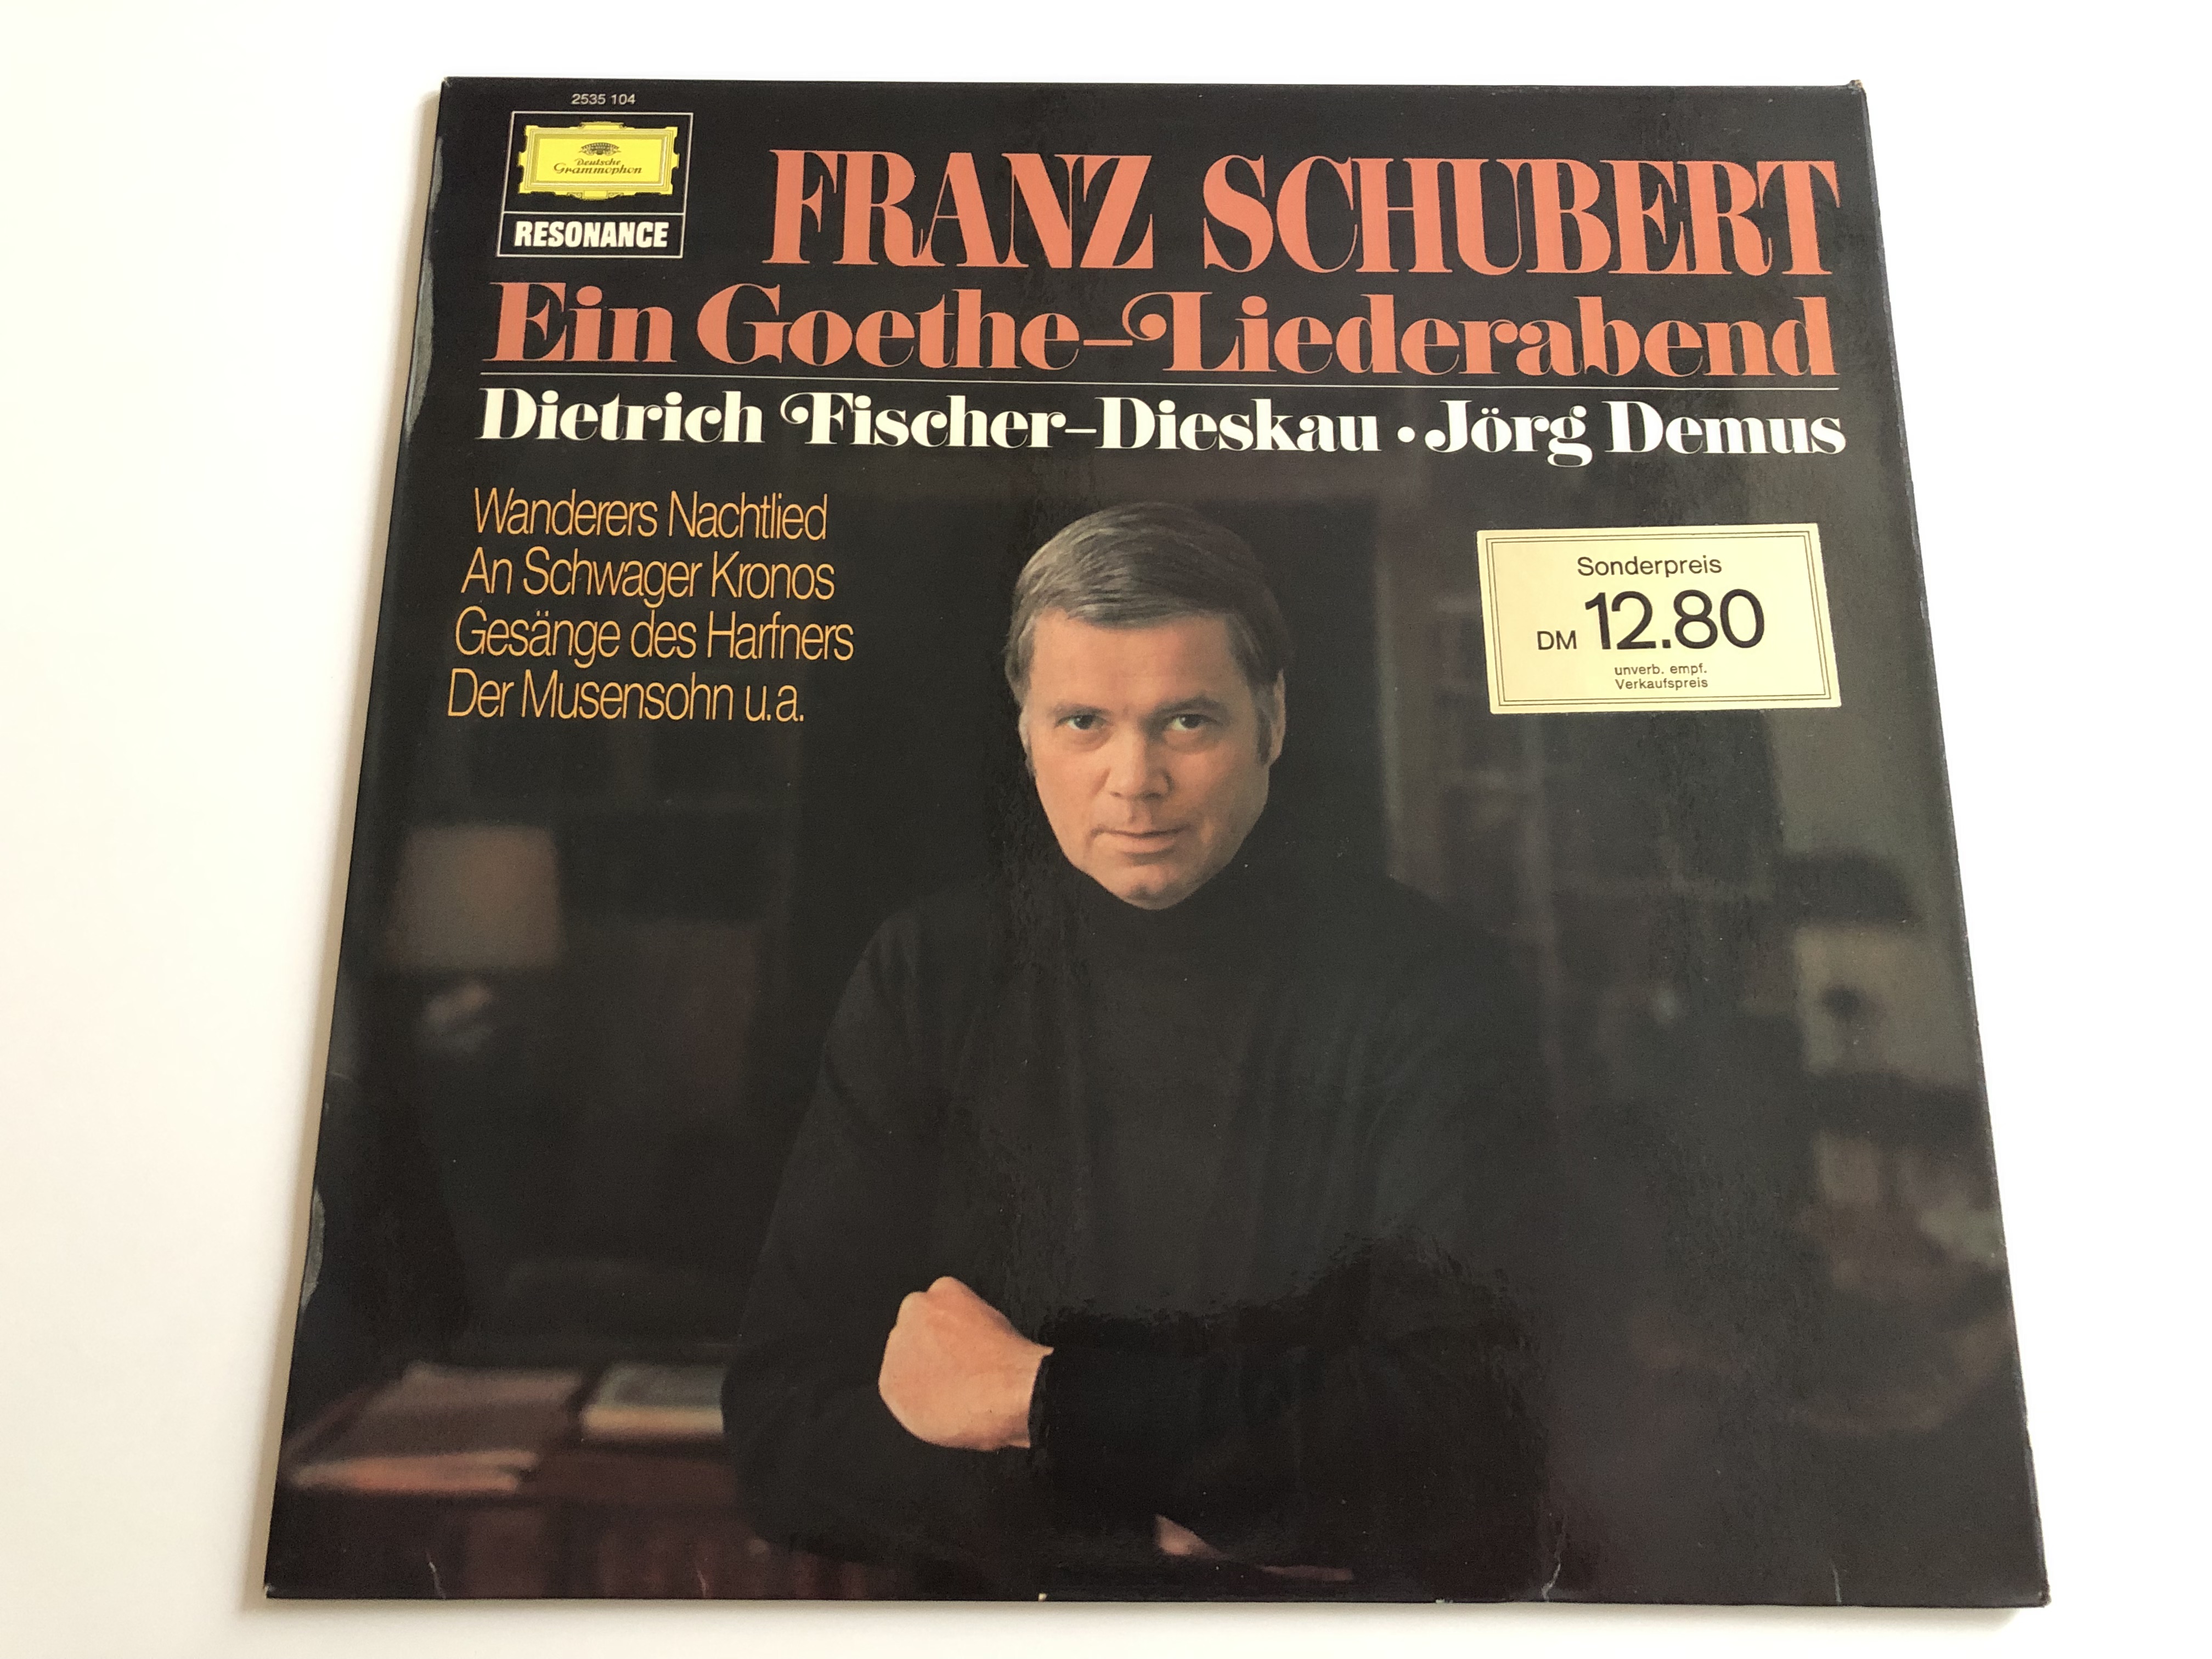 franz-schubert-ein-goethe-liederabend-dietrich-fischer-dieskau-j-rg-demus-deutsche-grammophon-lp-stereo-2535-104-1-.jpg